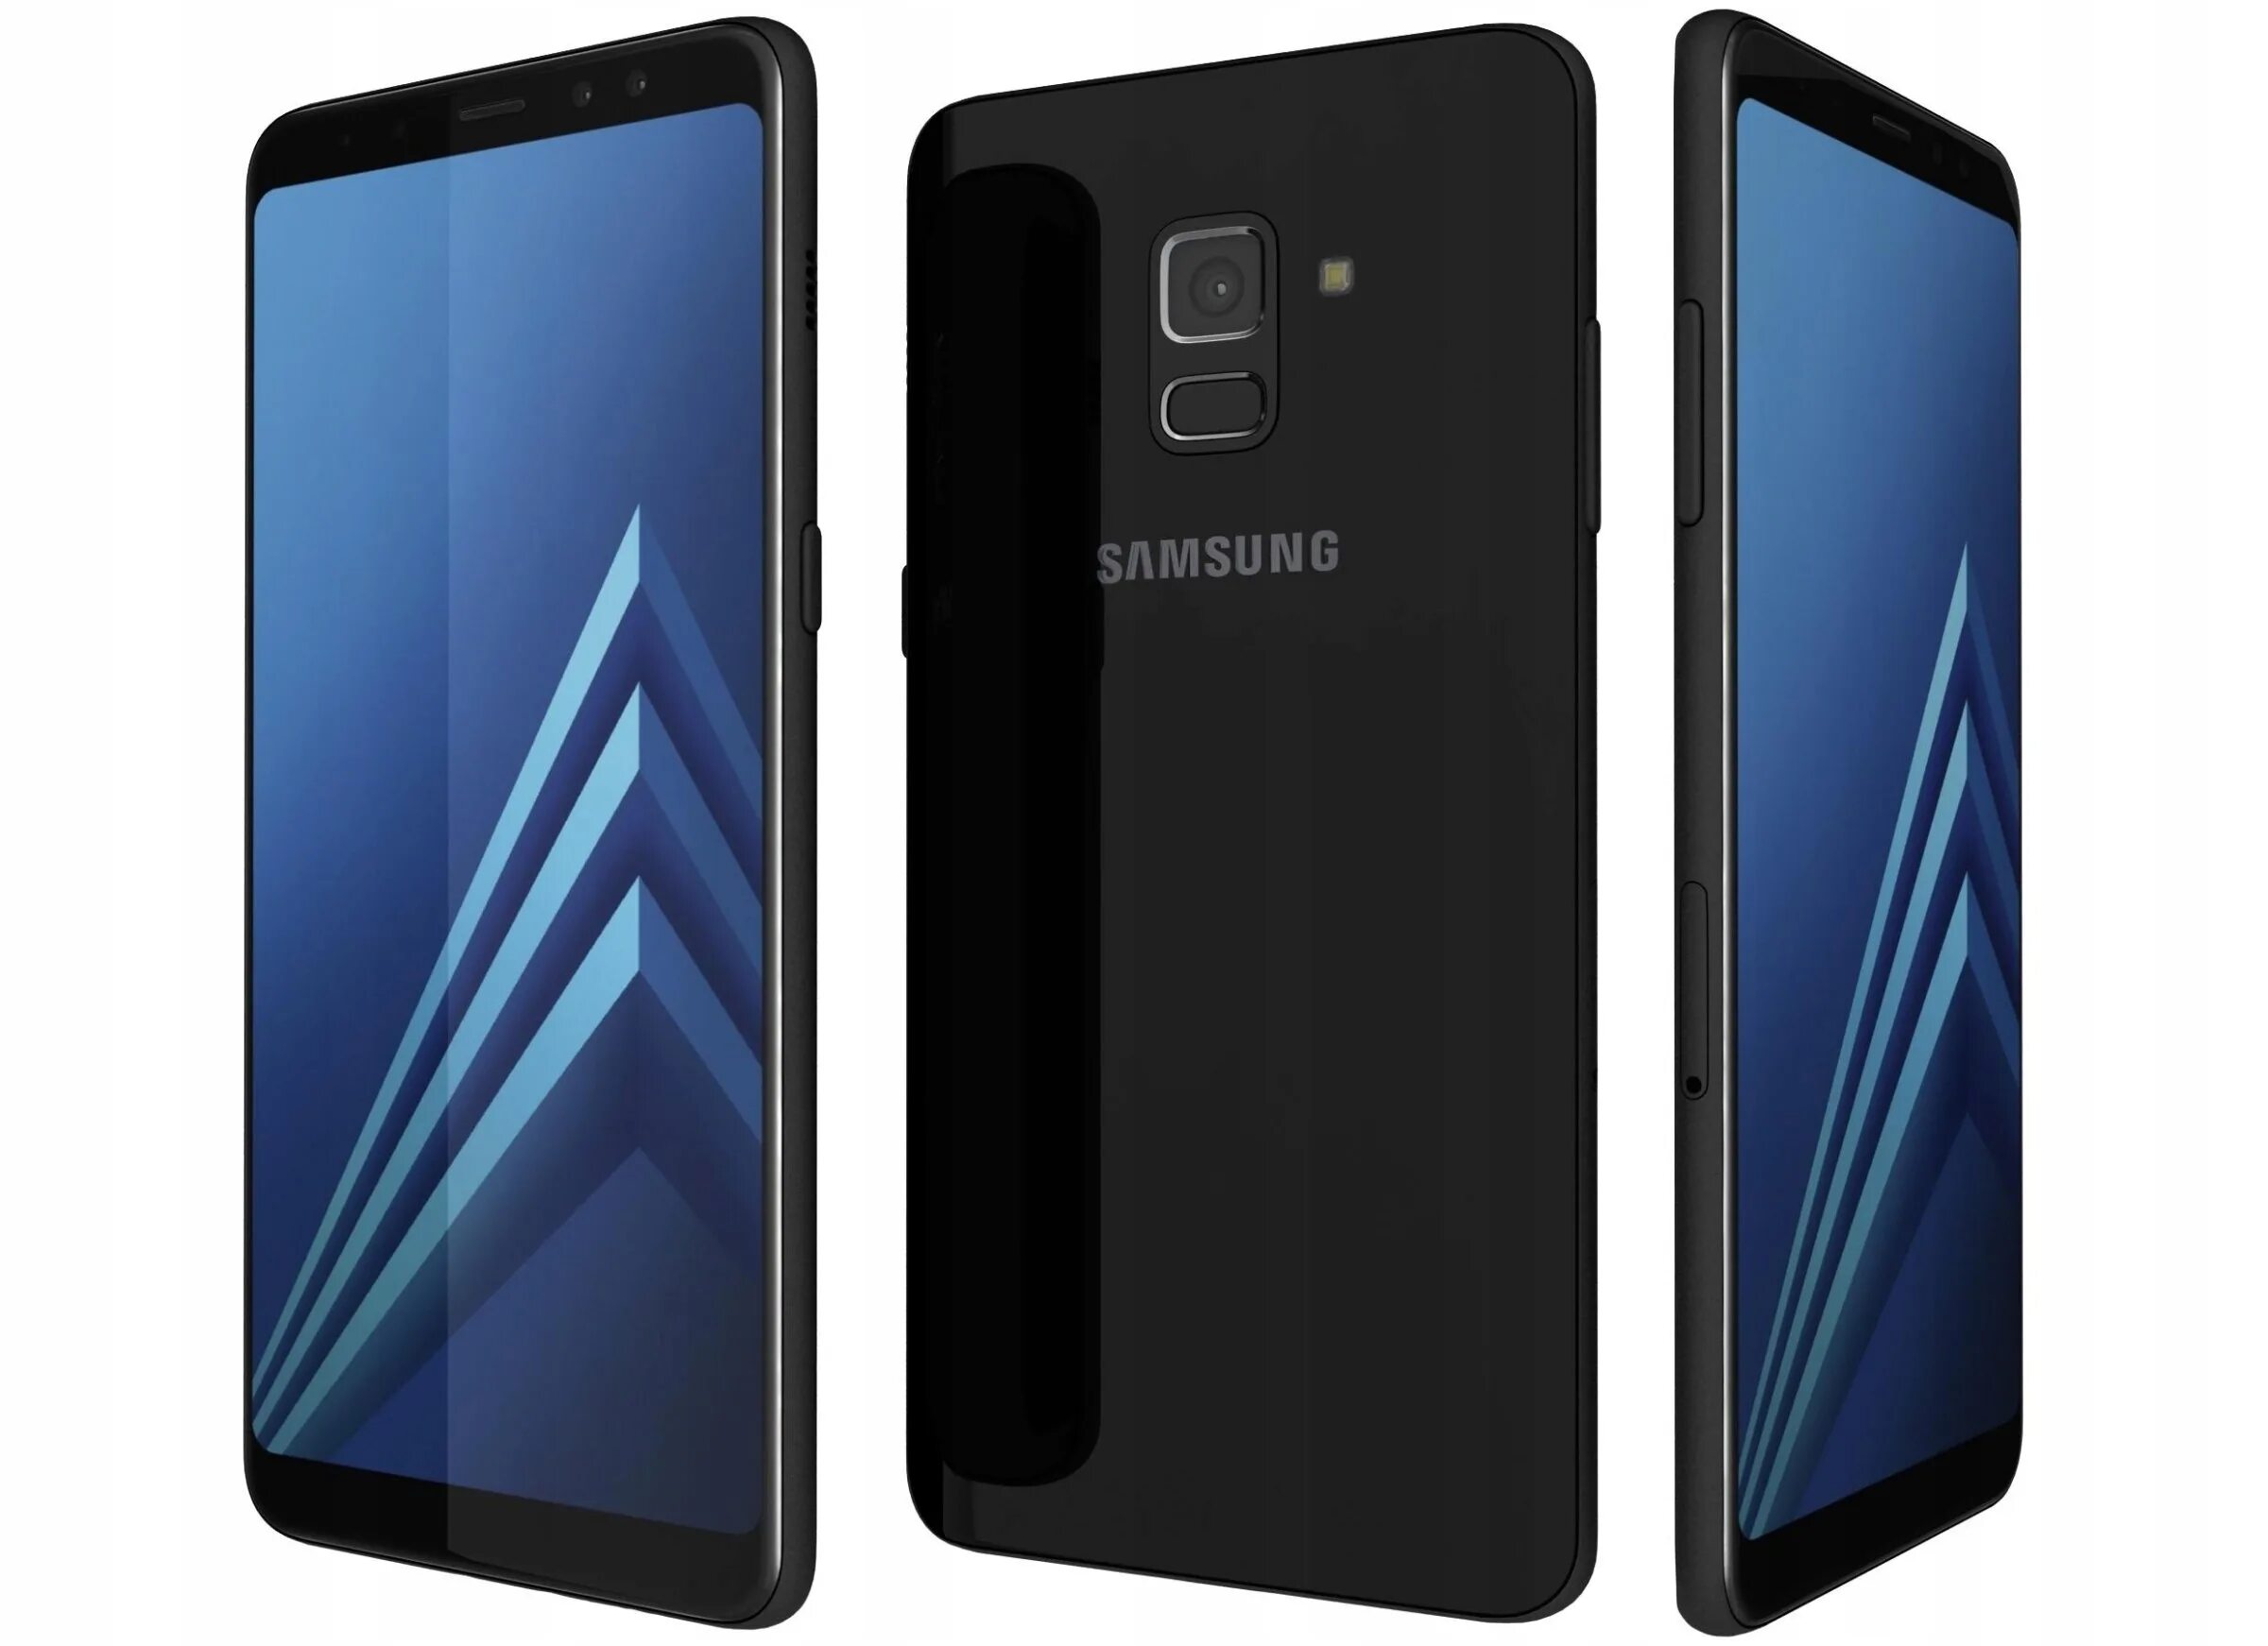 Galaxy a8 32. Samsung Galaxy a8 2018 Black. Samsung Galaxy a8 Plus. Samsung Galaxy a8 2018 a530f. Samsung Galaxy a8 Plus 2018.